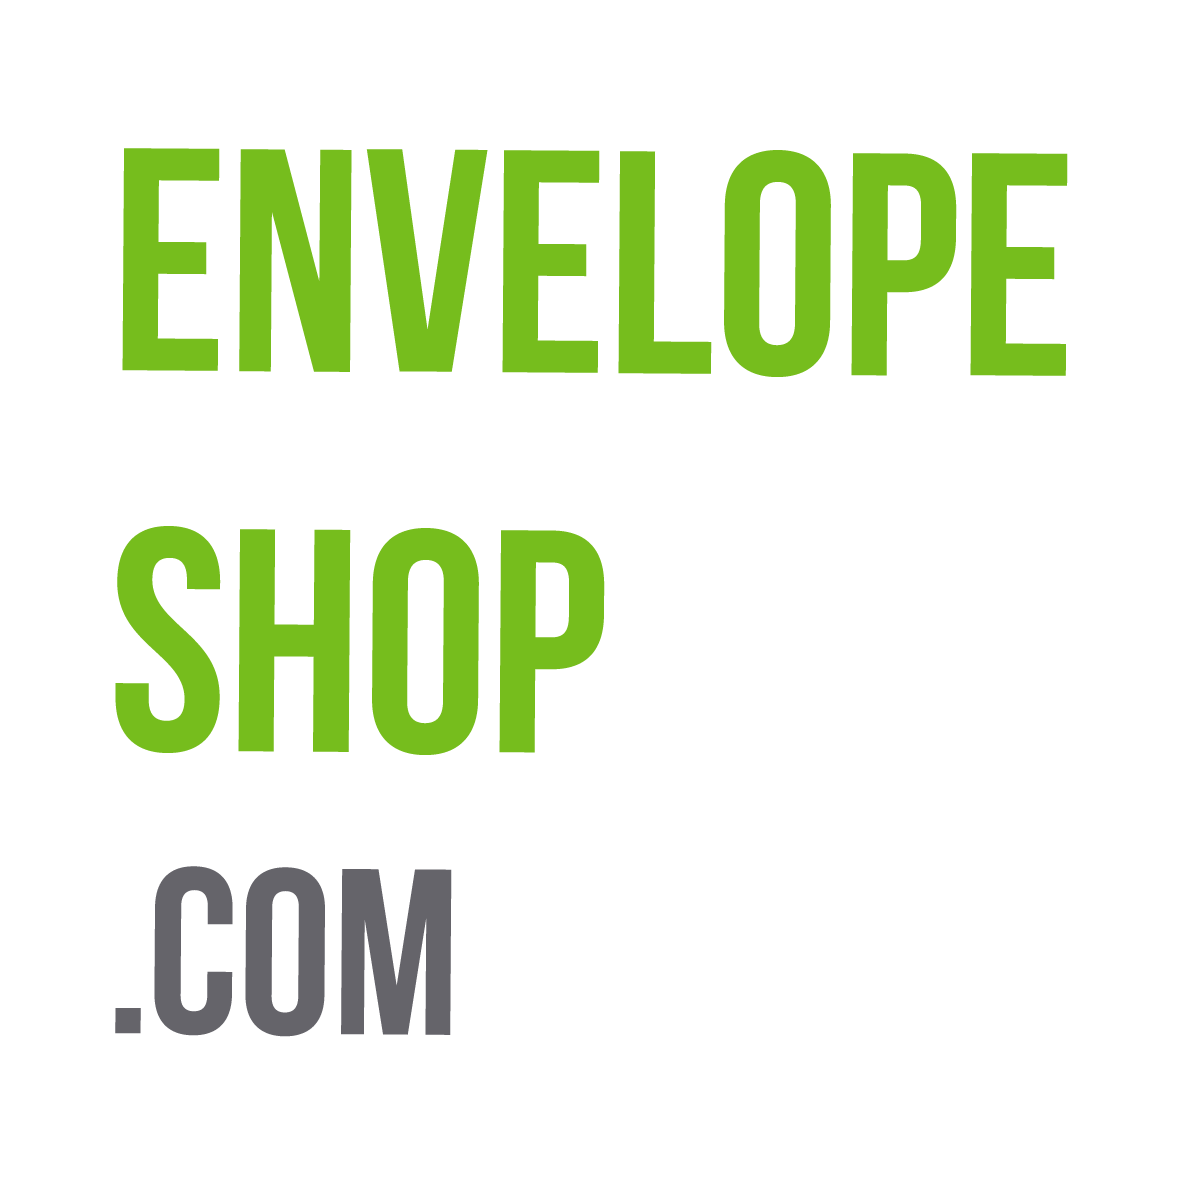 Envelopeshop.com